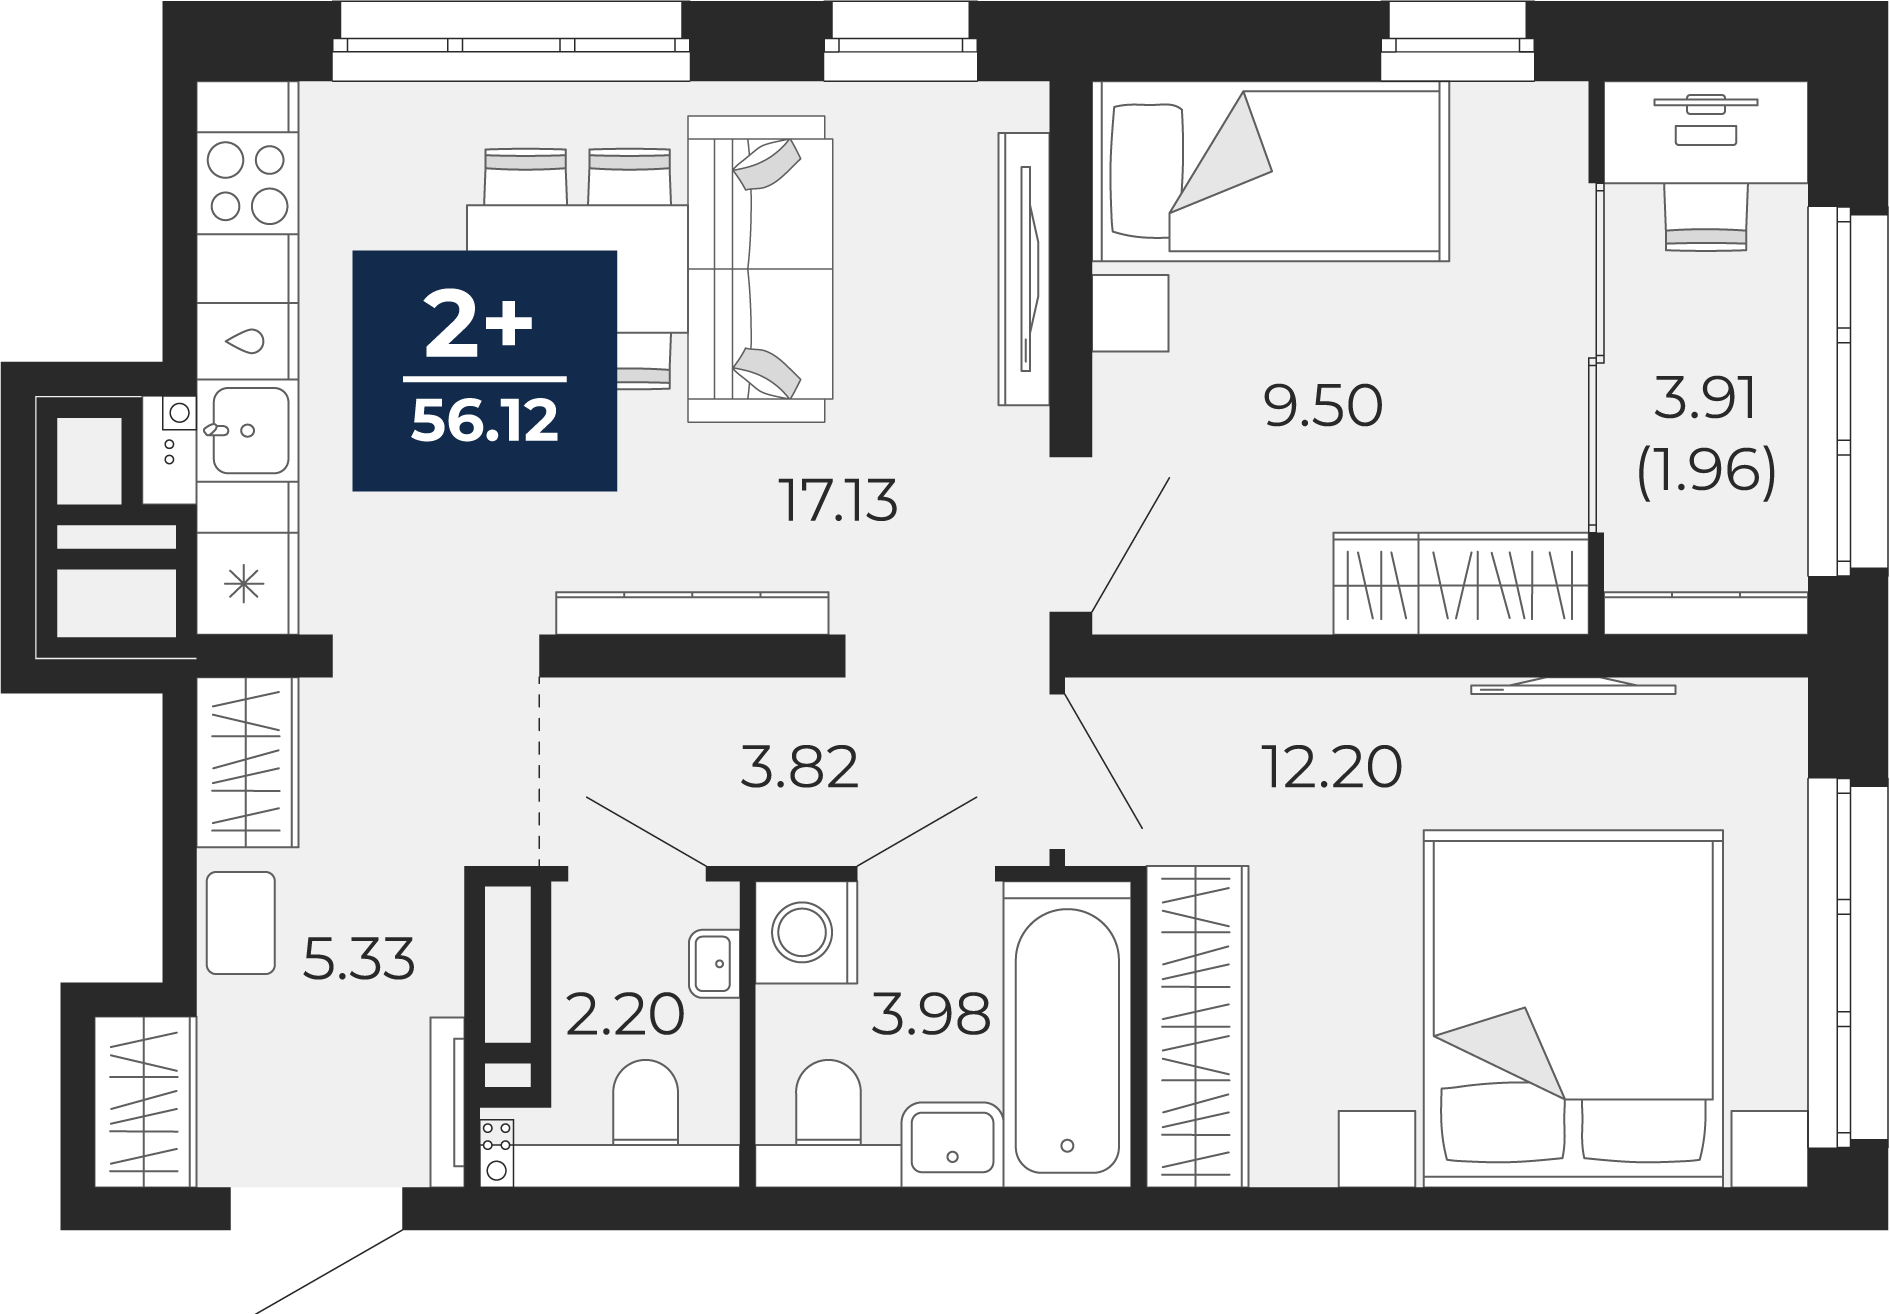 Квартира № 126, 2-комнатная, 56.12 кв. м, 10 этаж